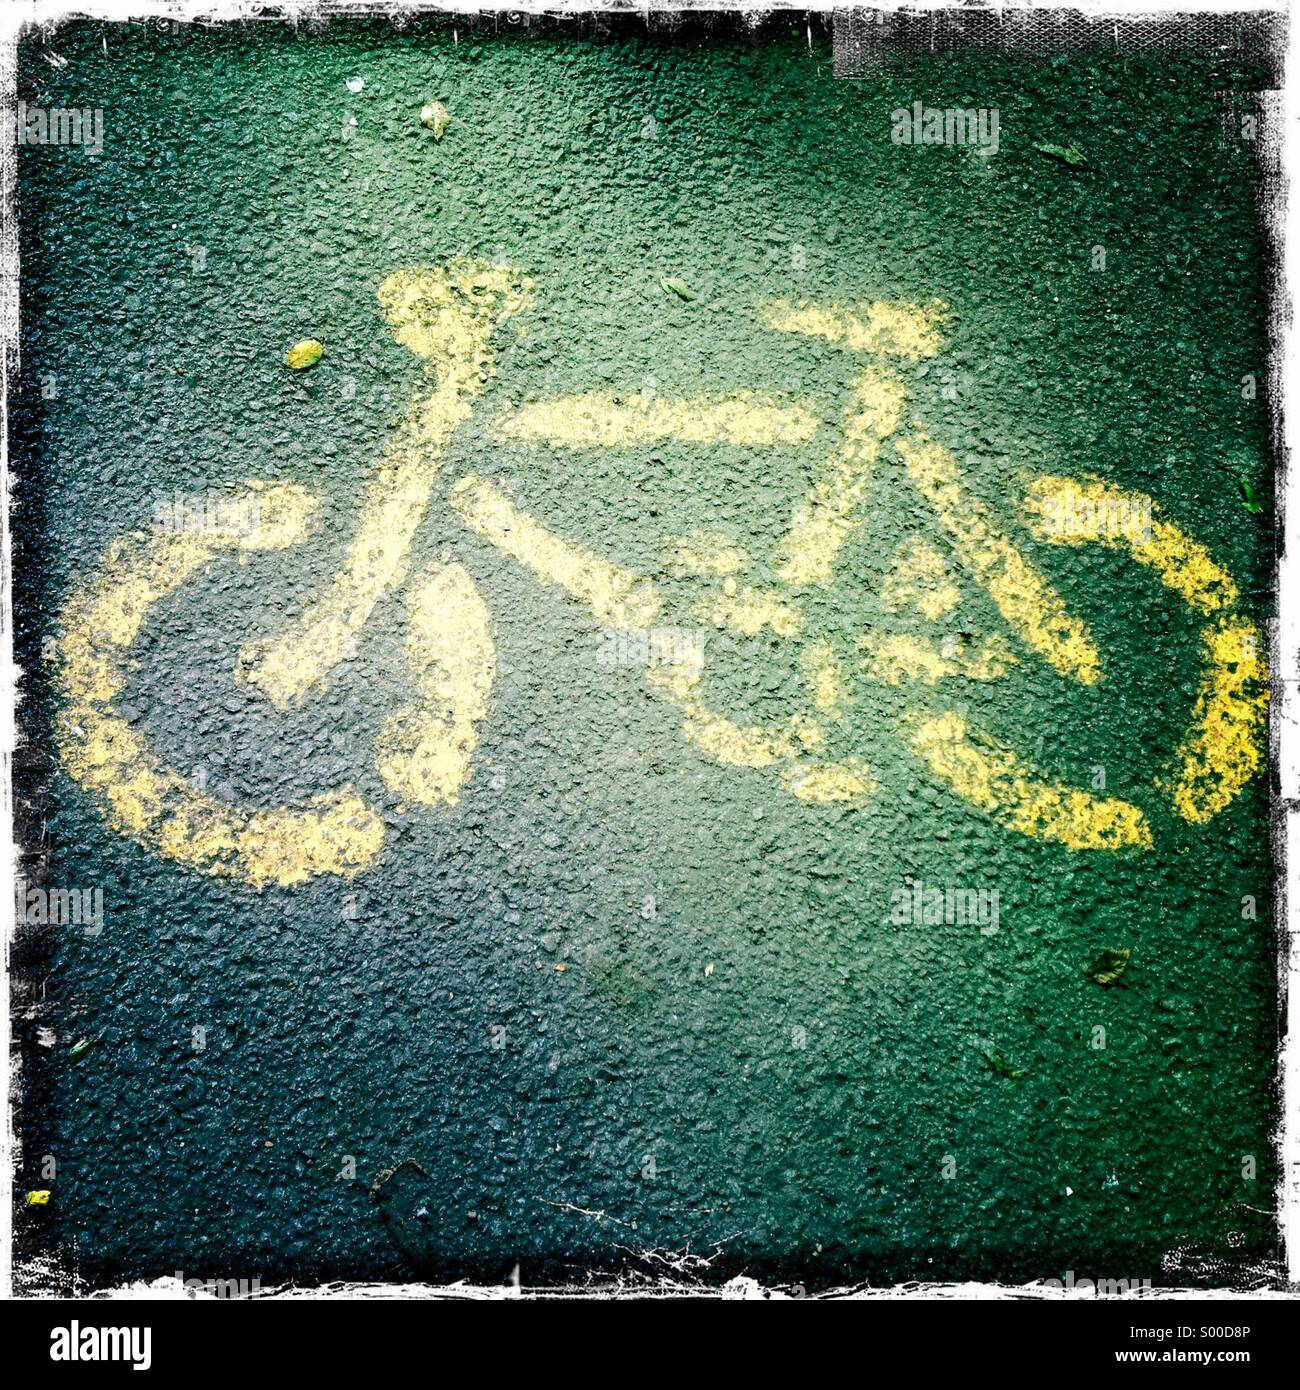 Vélo vélo icône sur le gravier. Hamptead Heath Londres. Banque D'Images